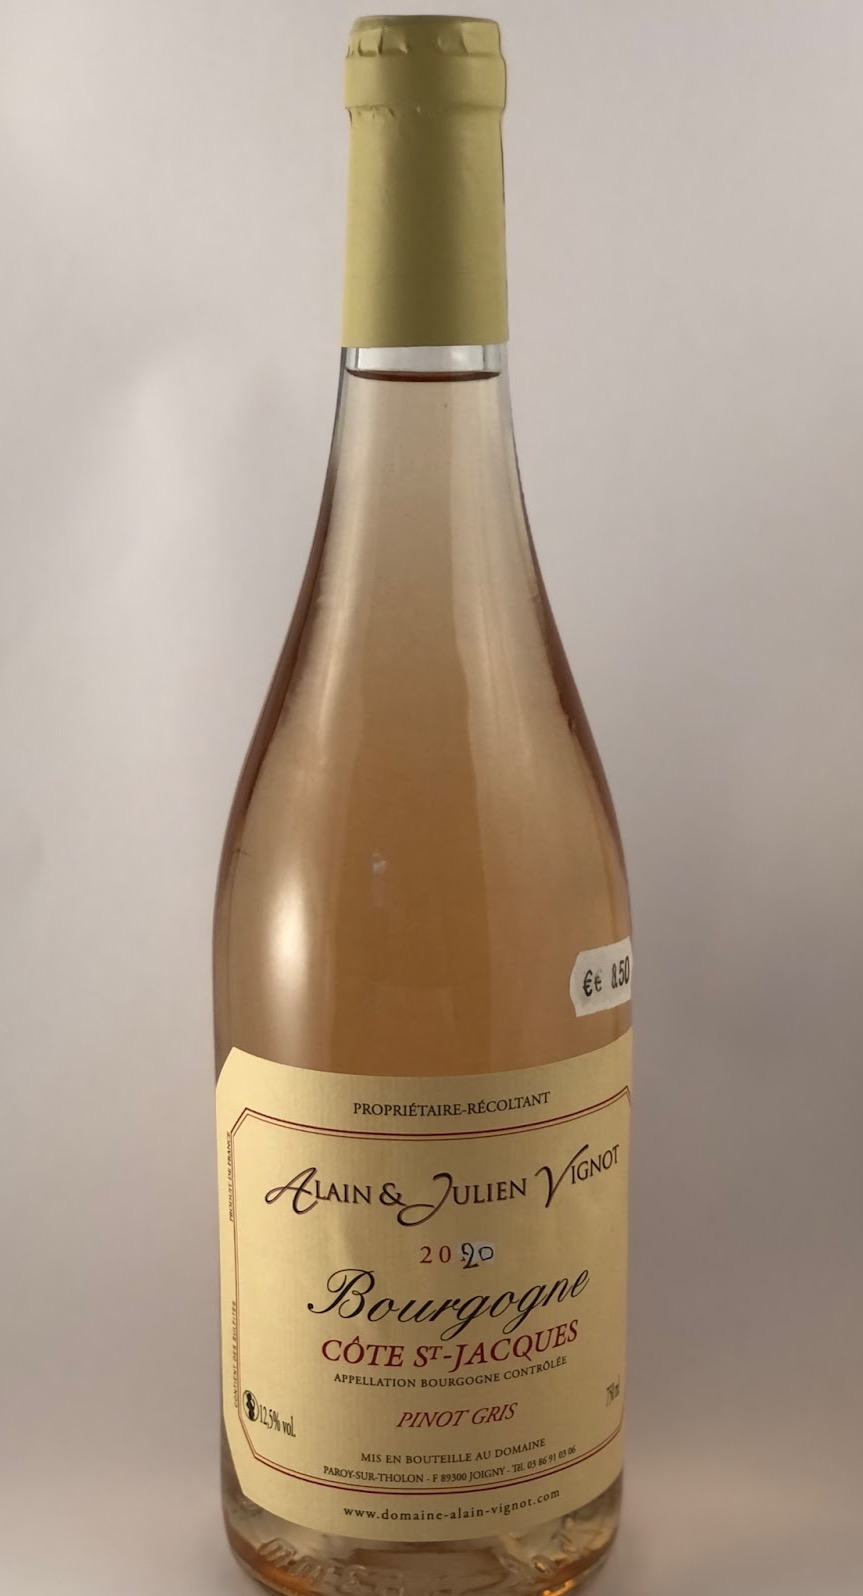 Vin gris Alain & Julien Vignot Bourgogne Cote St Jacques Pinot Gris ABC – 12.5% - 750 ml